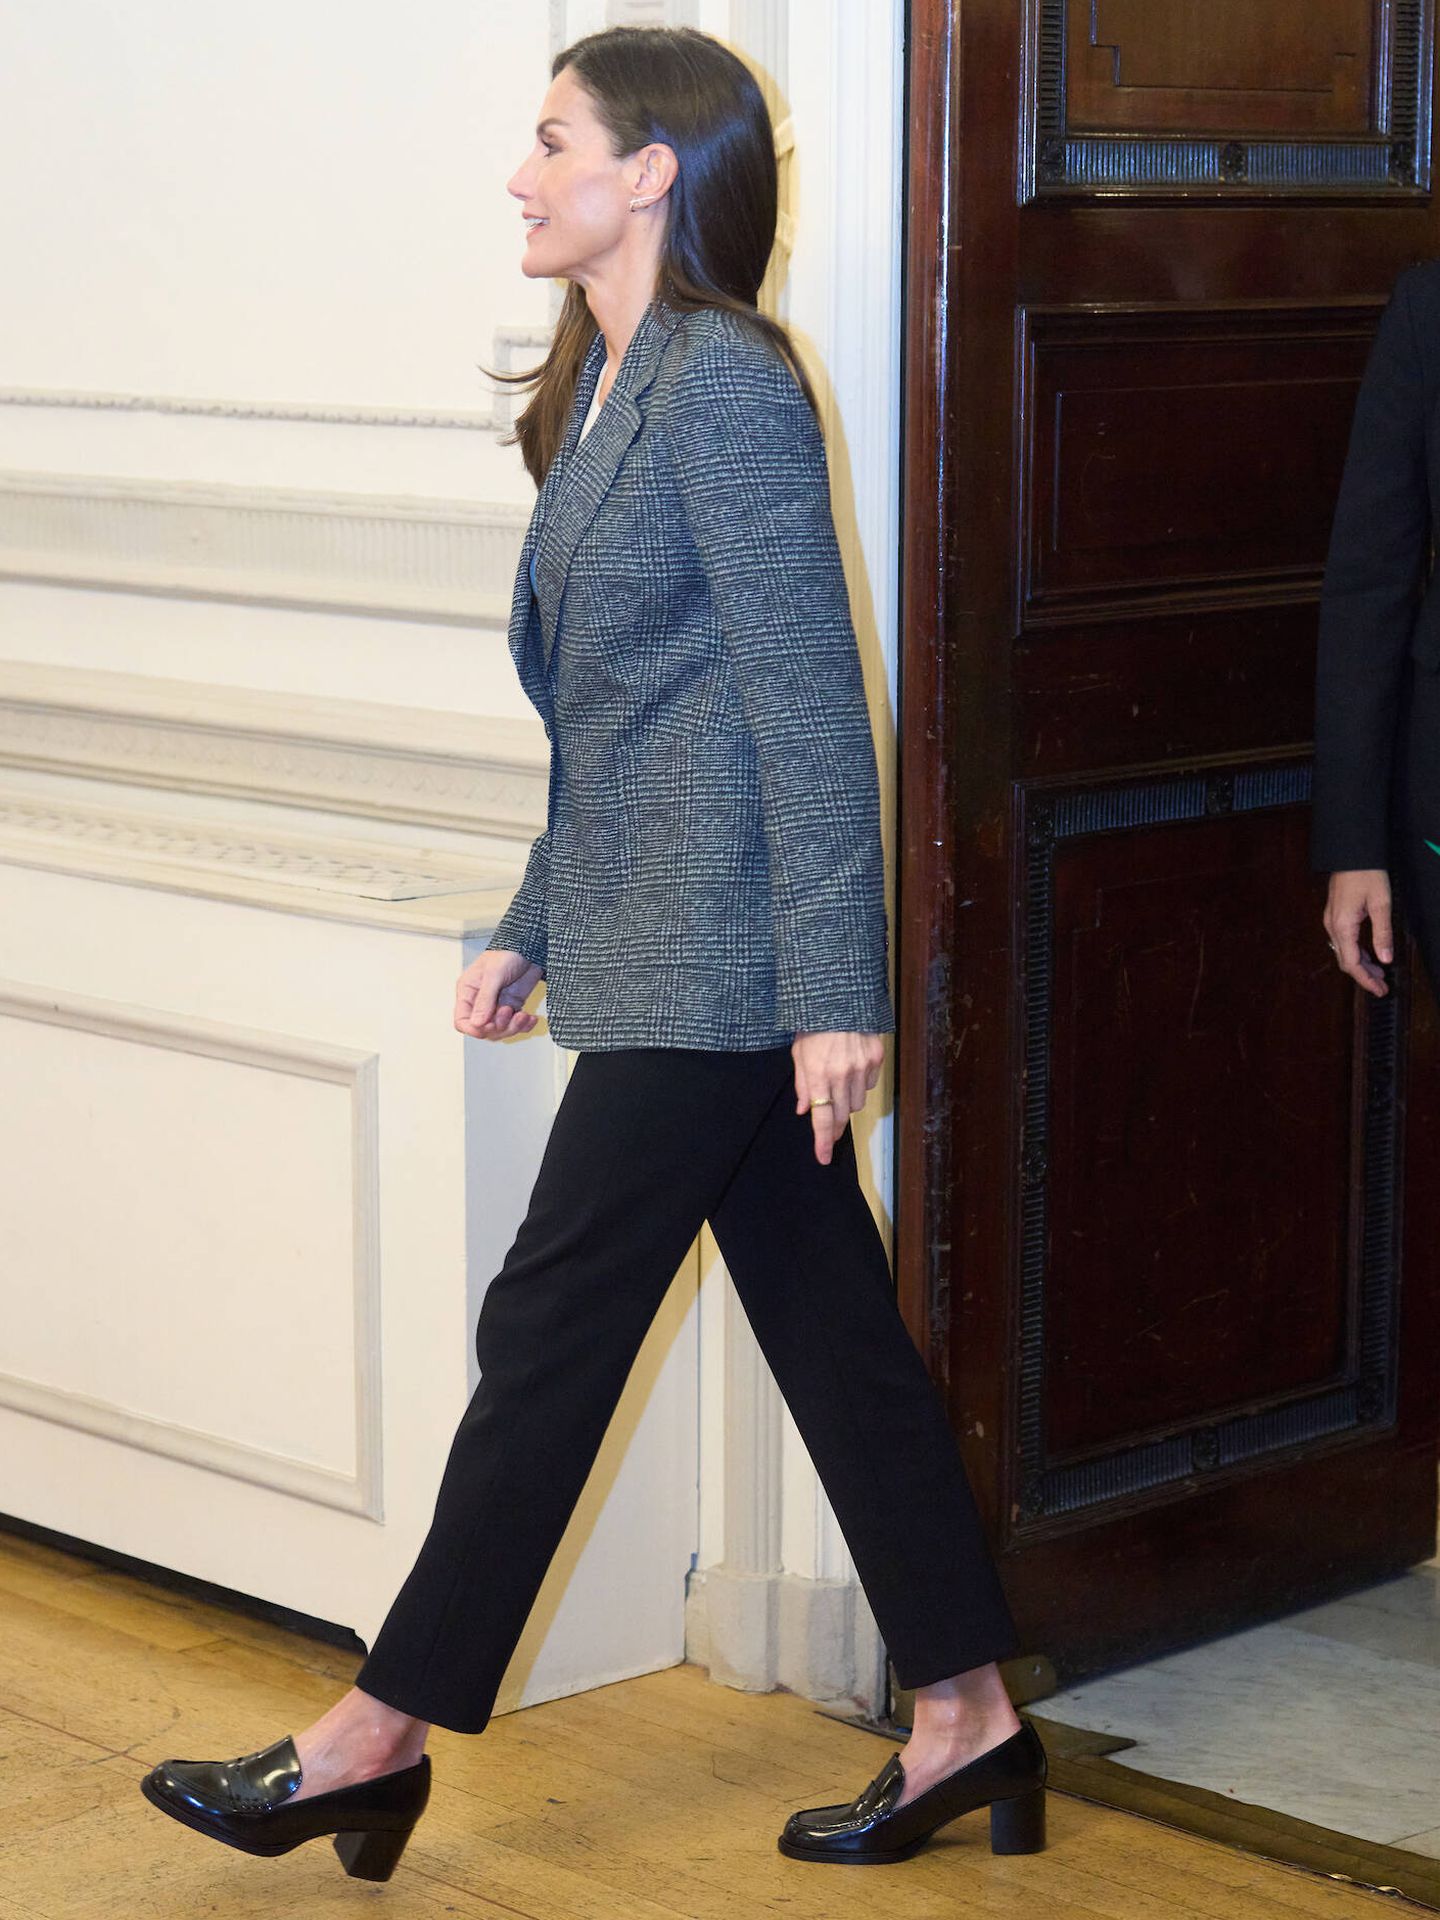 La reina Letizia, a su llegada a un acto reciente con mocasines de tacón ancho. (LP)